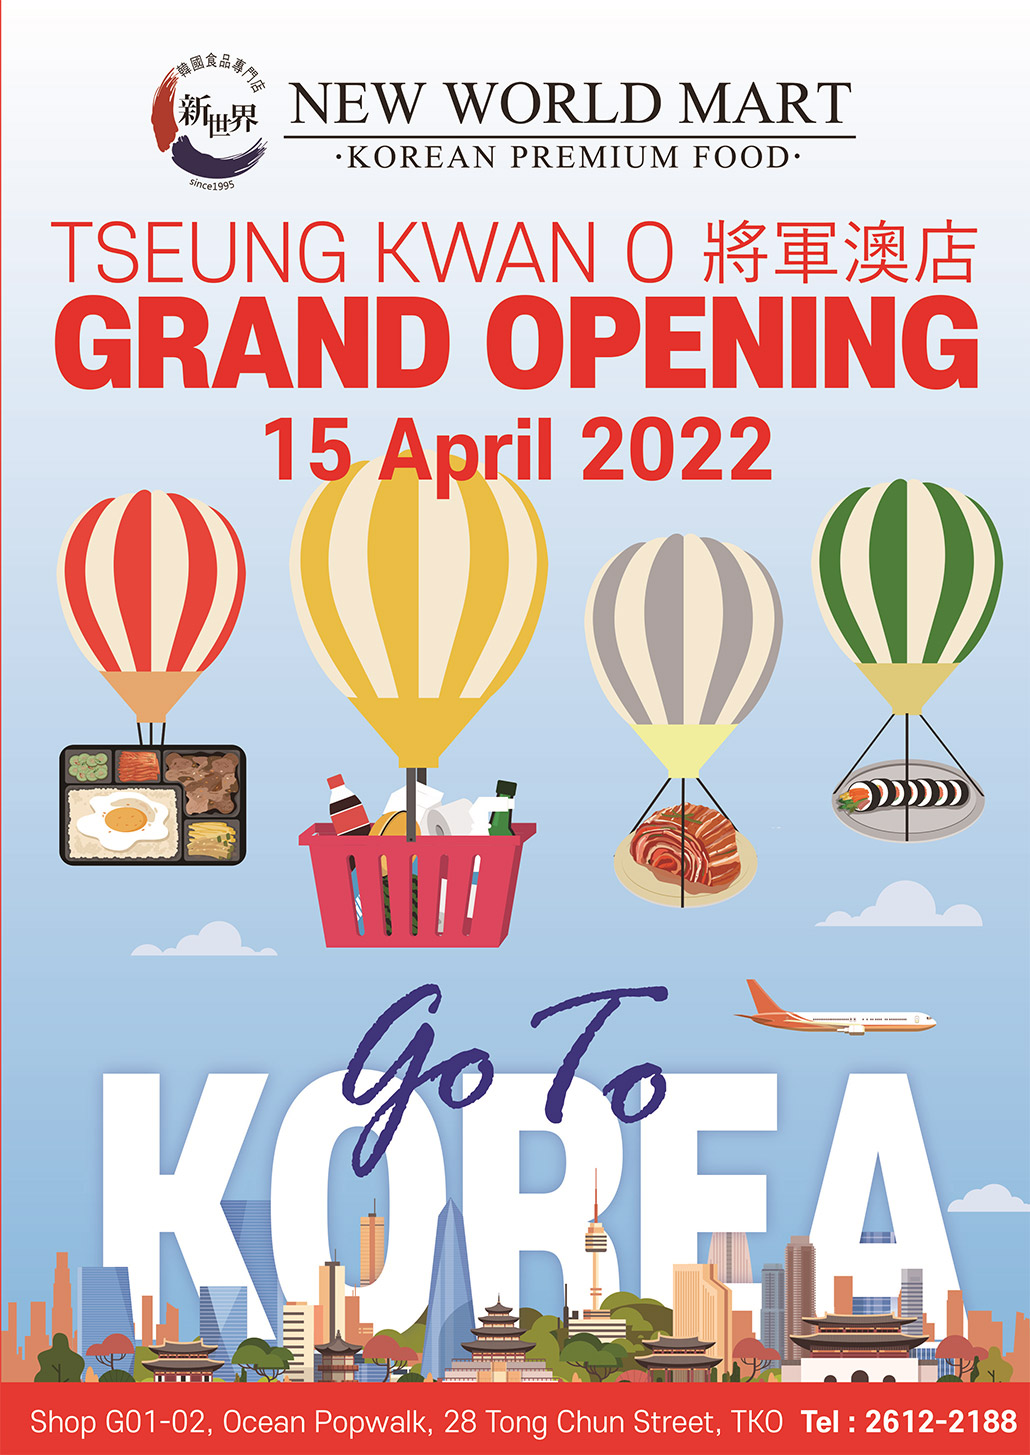 韓國食品-New World Mart Grand Open in TSEUNG KWAN O!